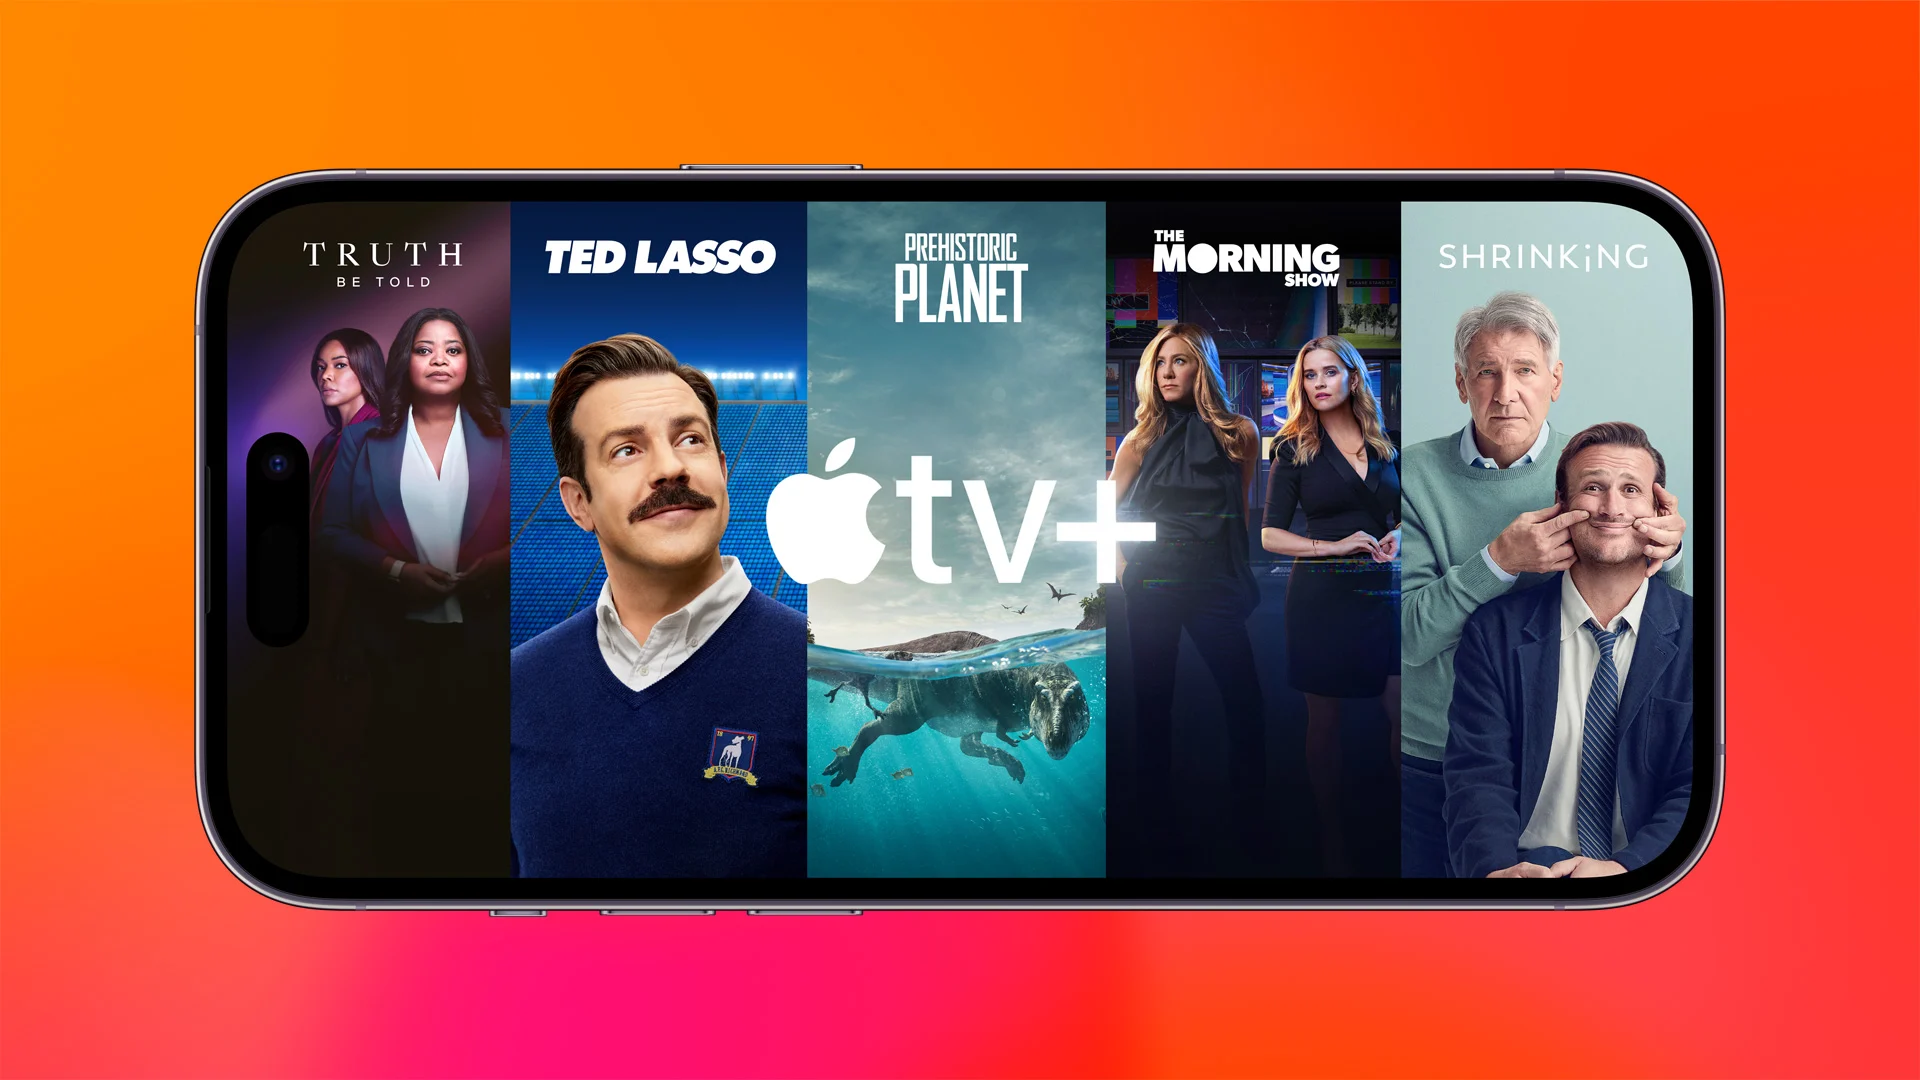 En mobil som visar olika serier från Apple tv plus